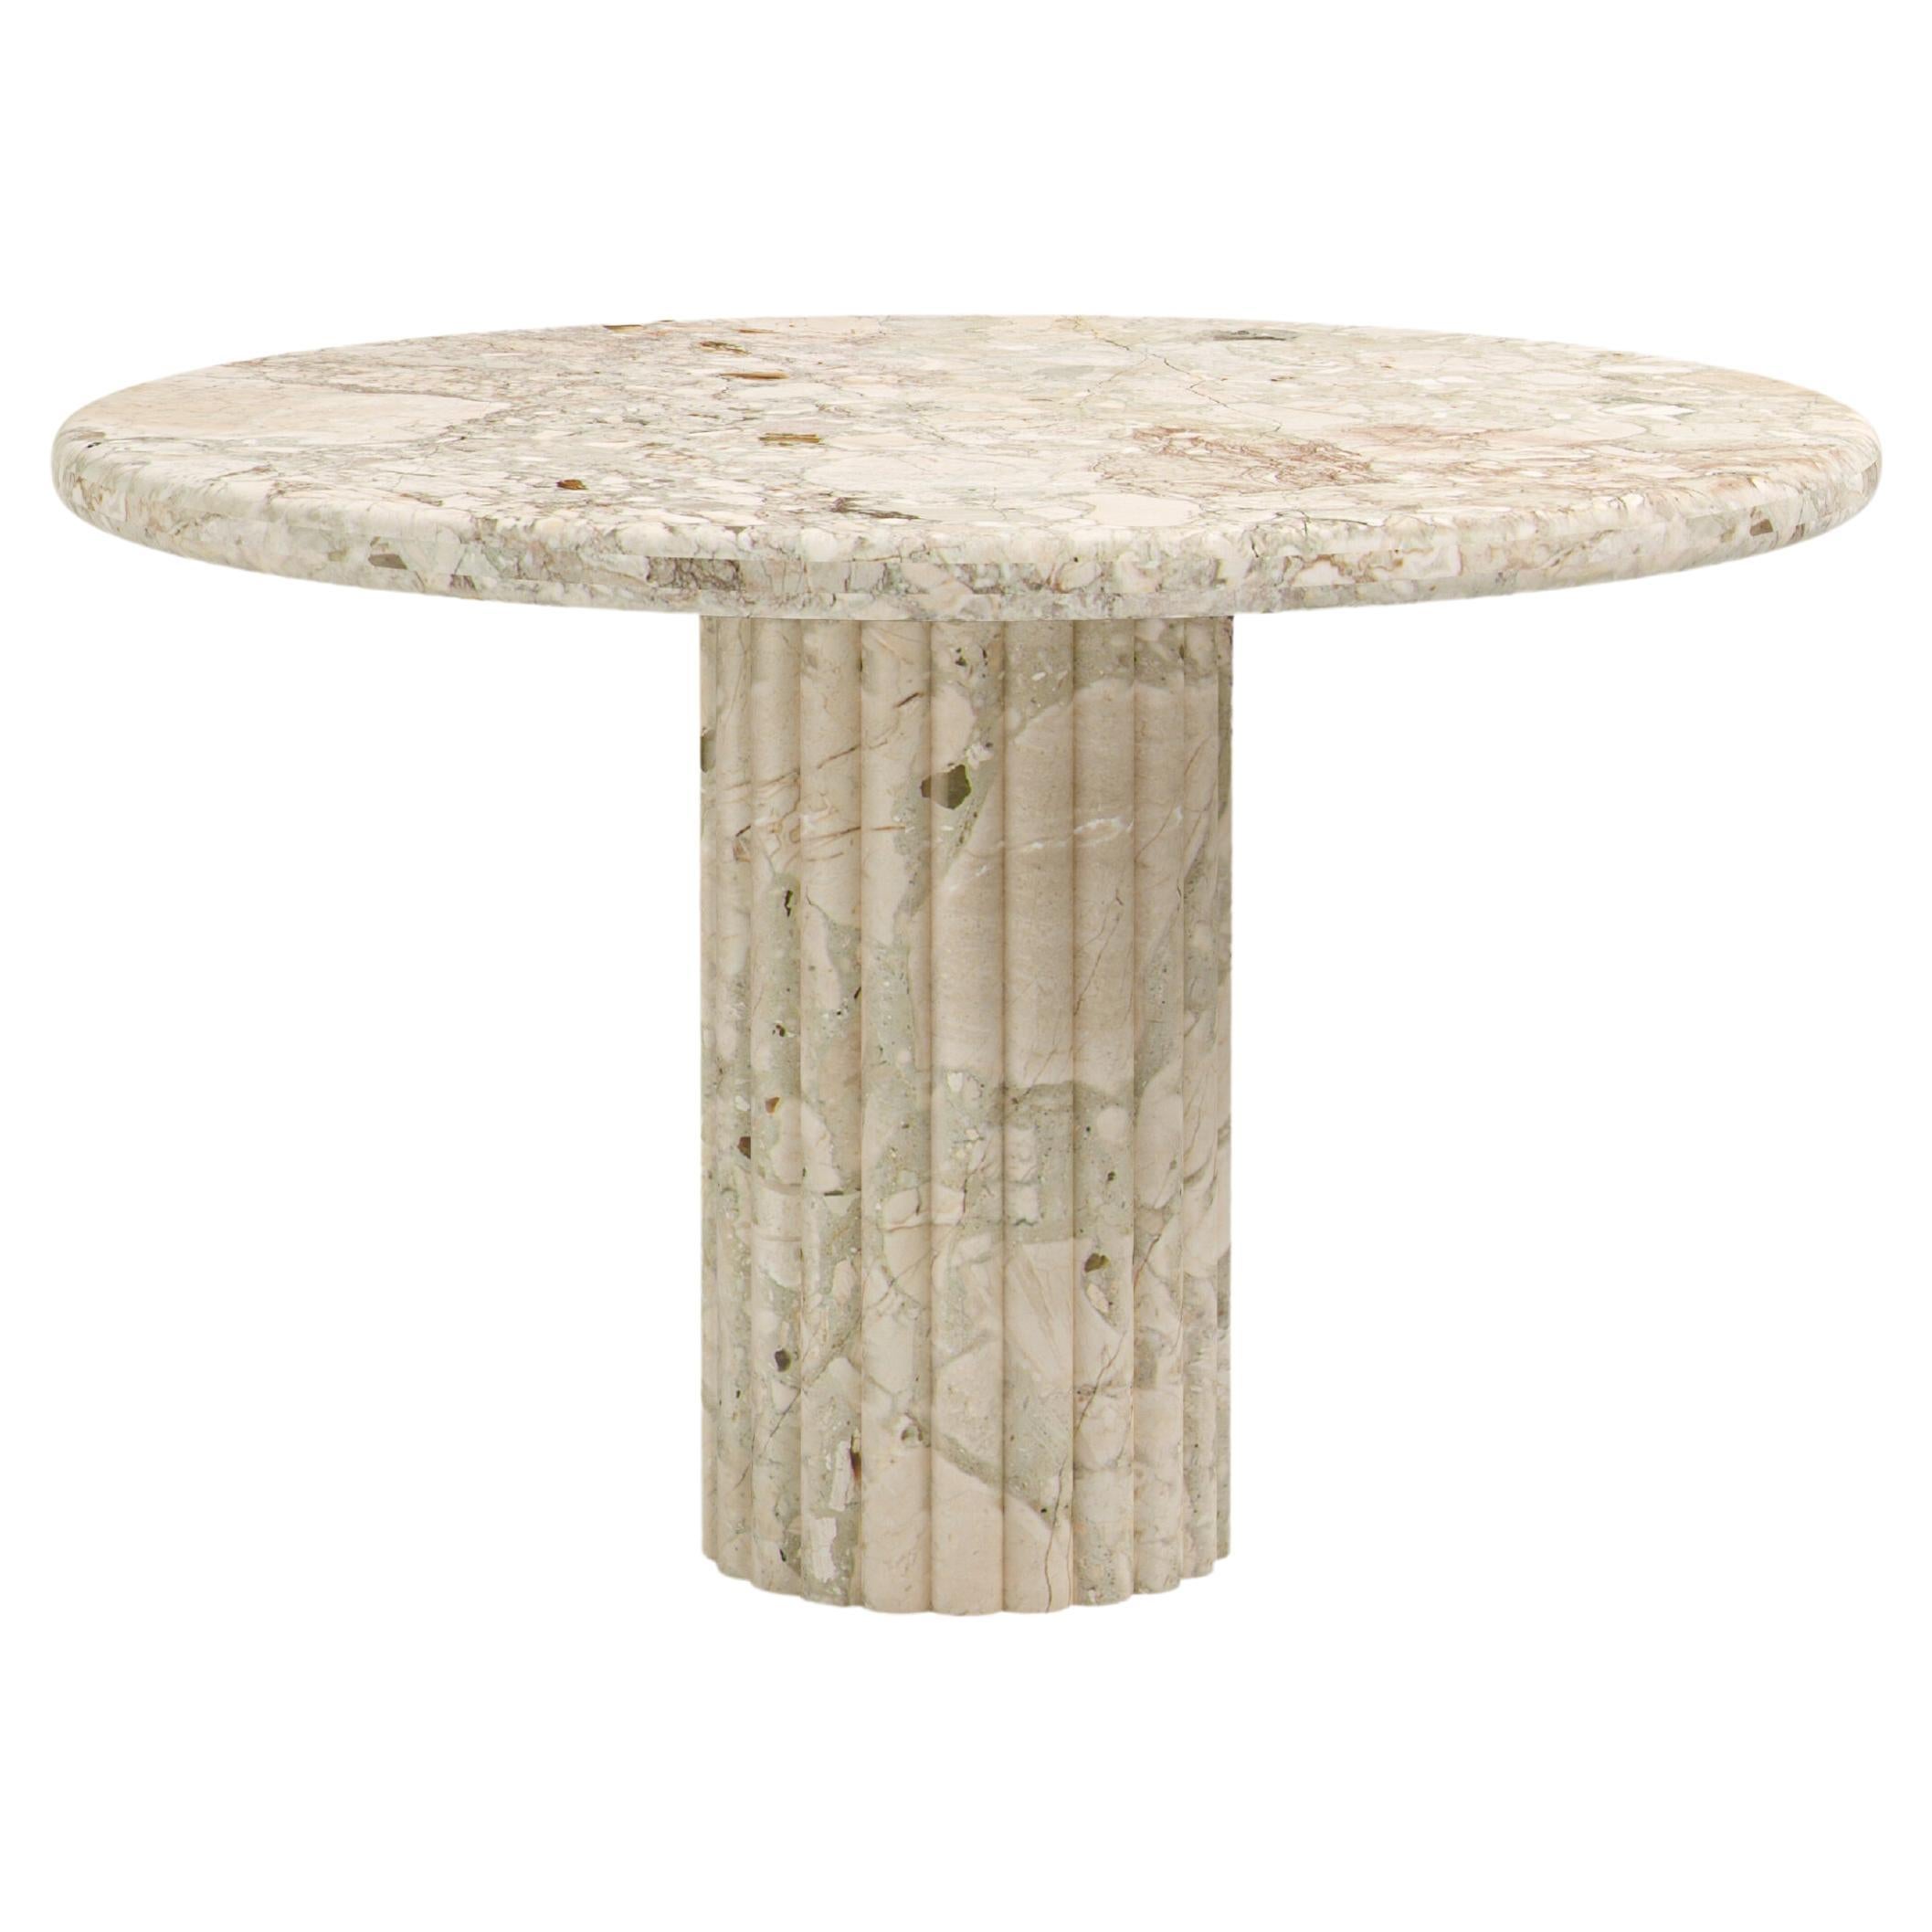 FORM(LA) Fluta Round Dining Table 42”L x 42”W x 30”H Breccia Rosa Marble